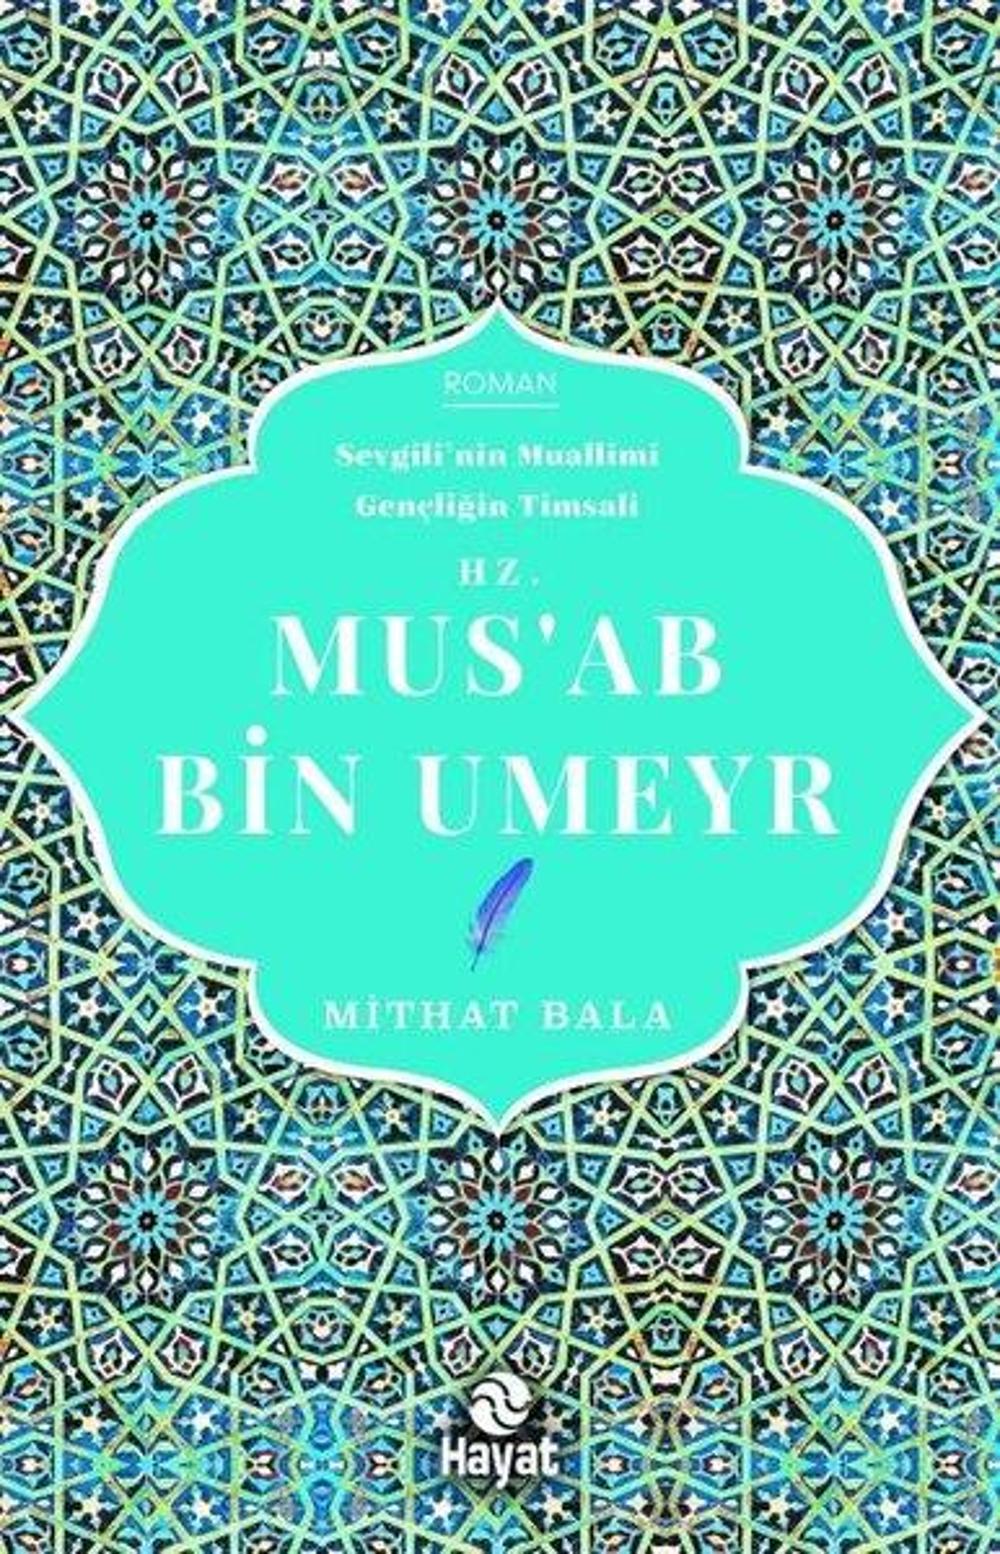 Hz. Mus'ab Bin Umeyr | Hayat Yayıncılık